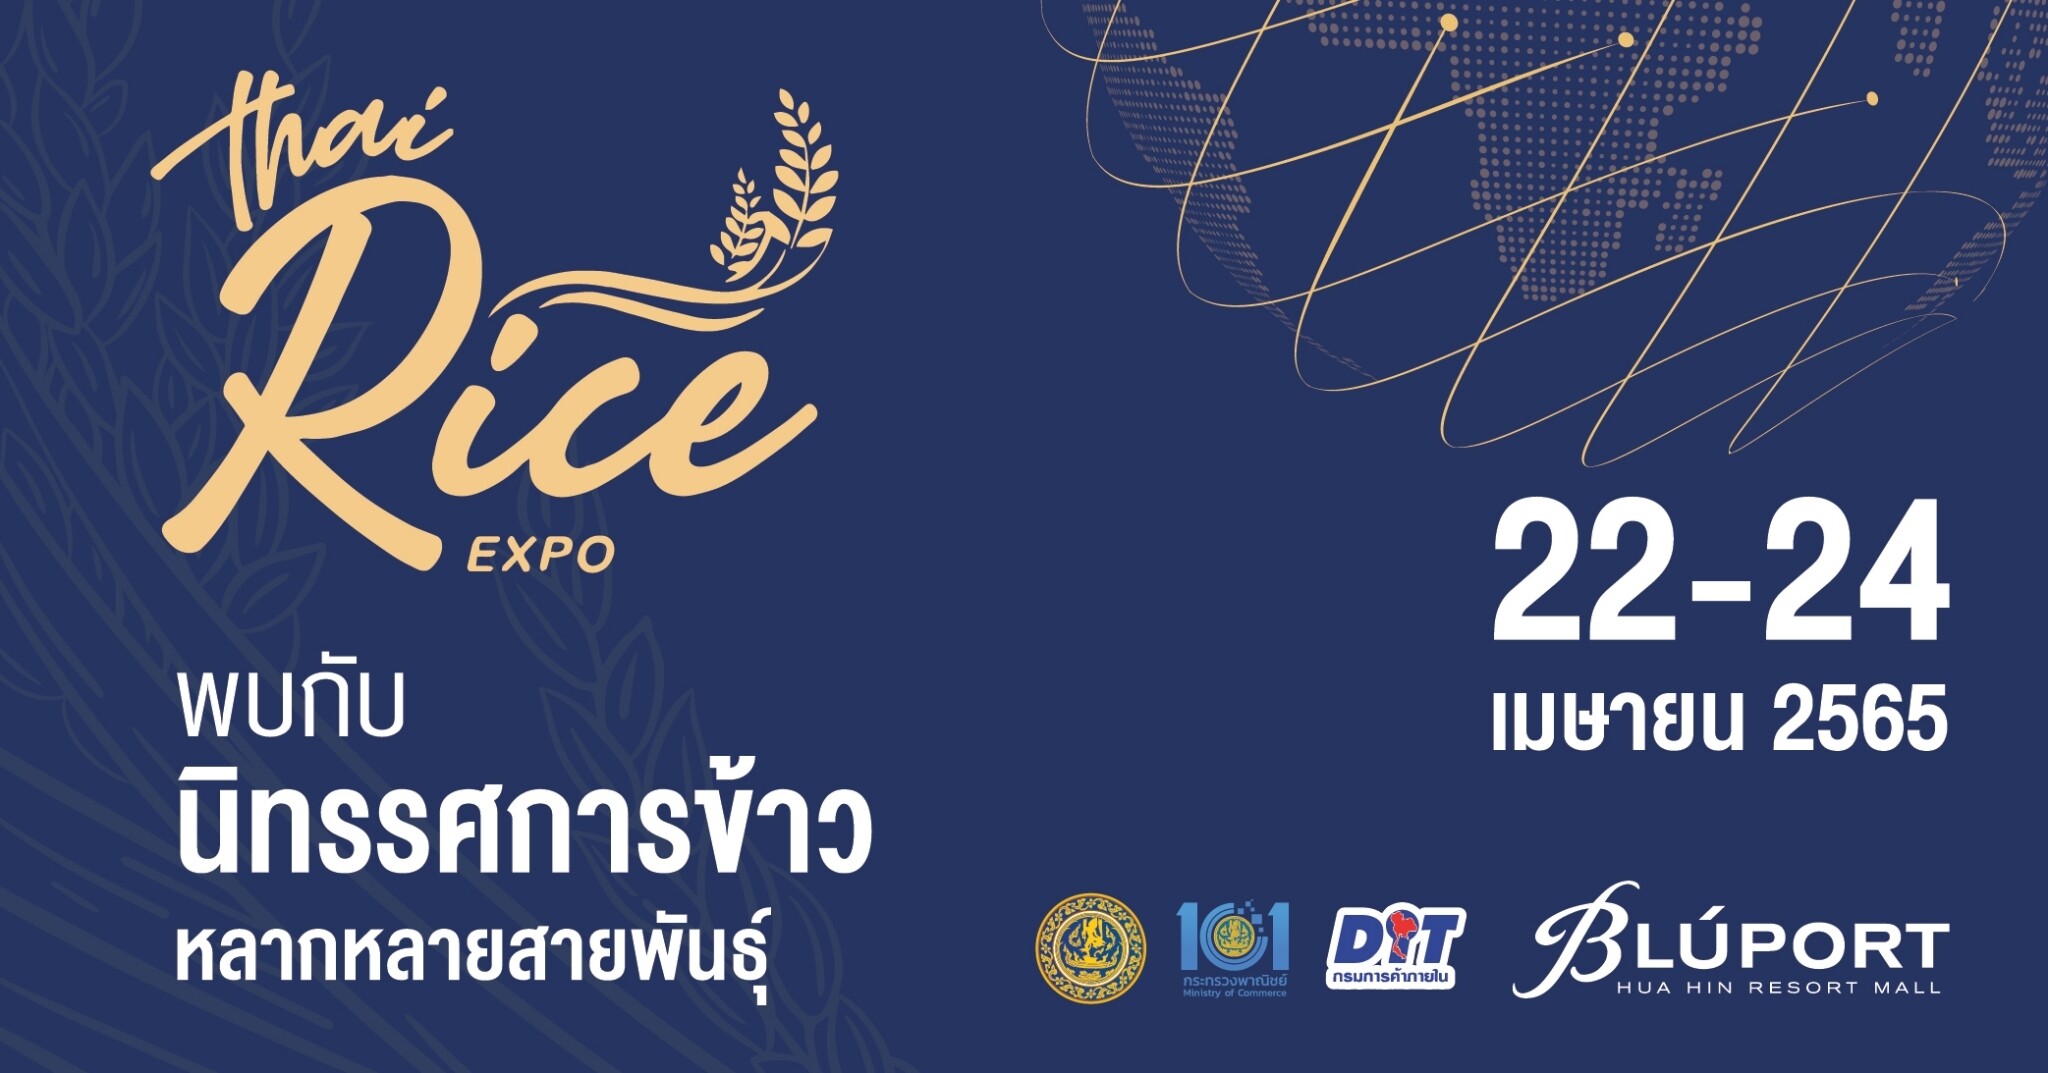 กรมการค้าภายใน กระทรวงพาณิชย์ และบลูพอร์ต หัวหิน จัดงาน Thai Rice Expo 2022 นิทรรศการข้าวหลากหลายสายพันธุ์ ยกระดับไทยสู่การเป็นผู้นำการผลิตการตลาดข้าวและผลิตภัณฑ์ข้าวคุณภาพของโลก